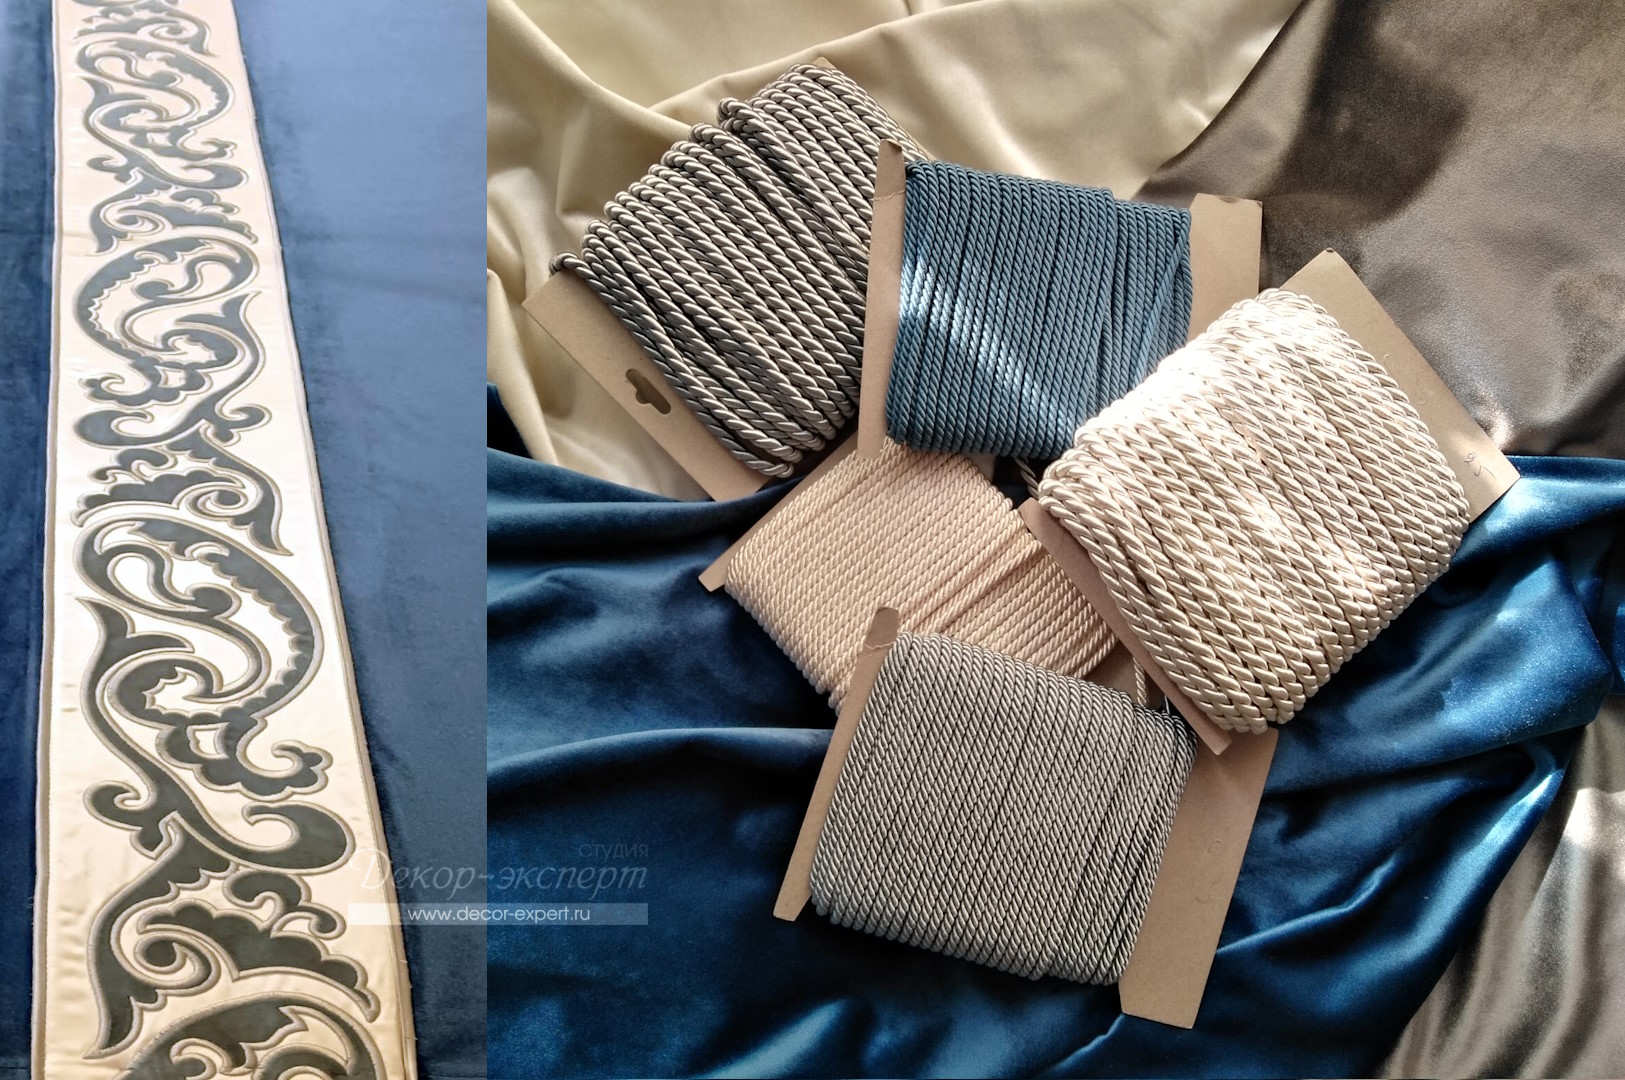 Фото вариантов бархатных тканей,  широкого бордюра для штор и декоративных шнуров для ламбрекена.